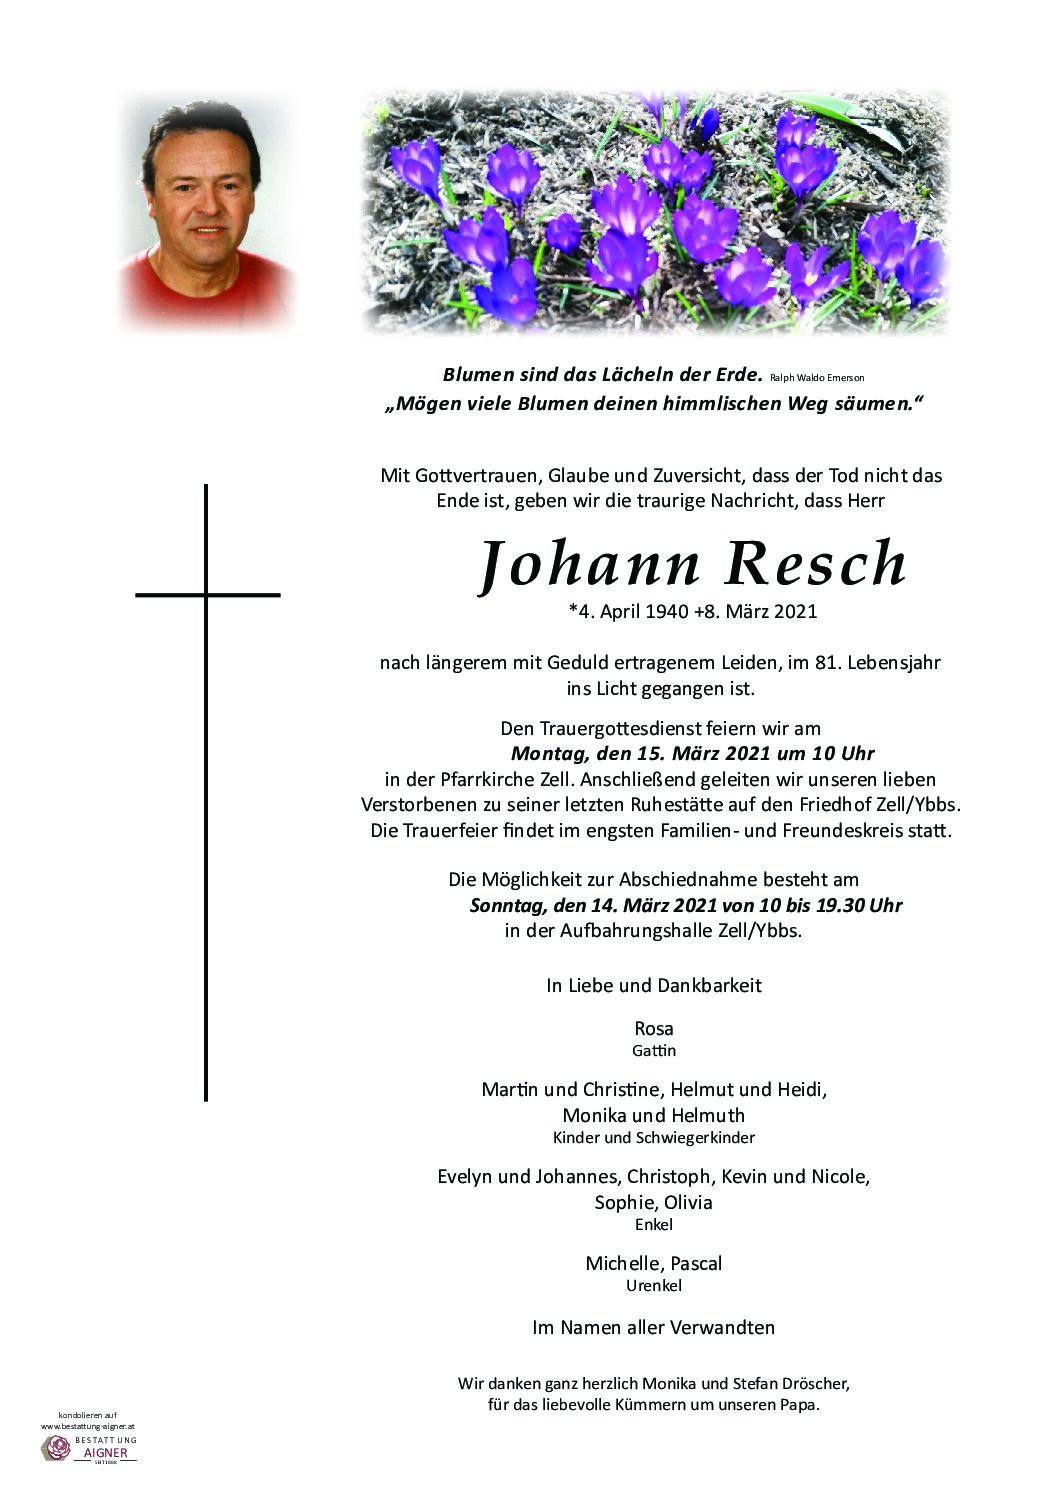 Johann Resch